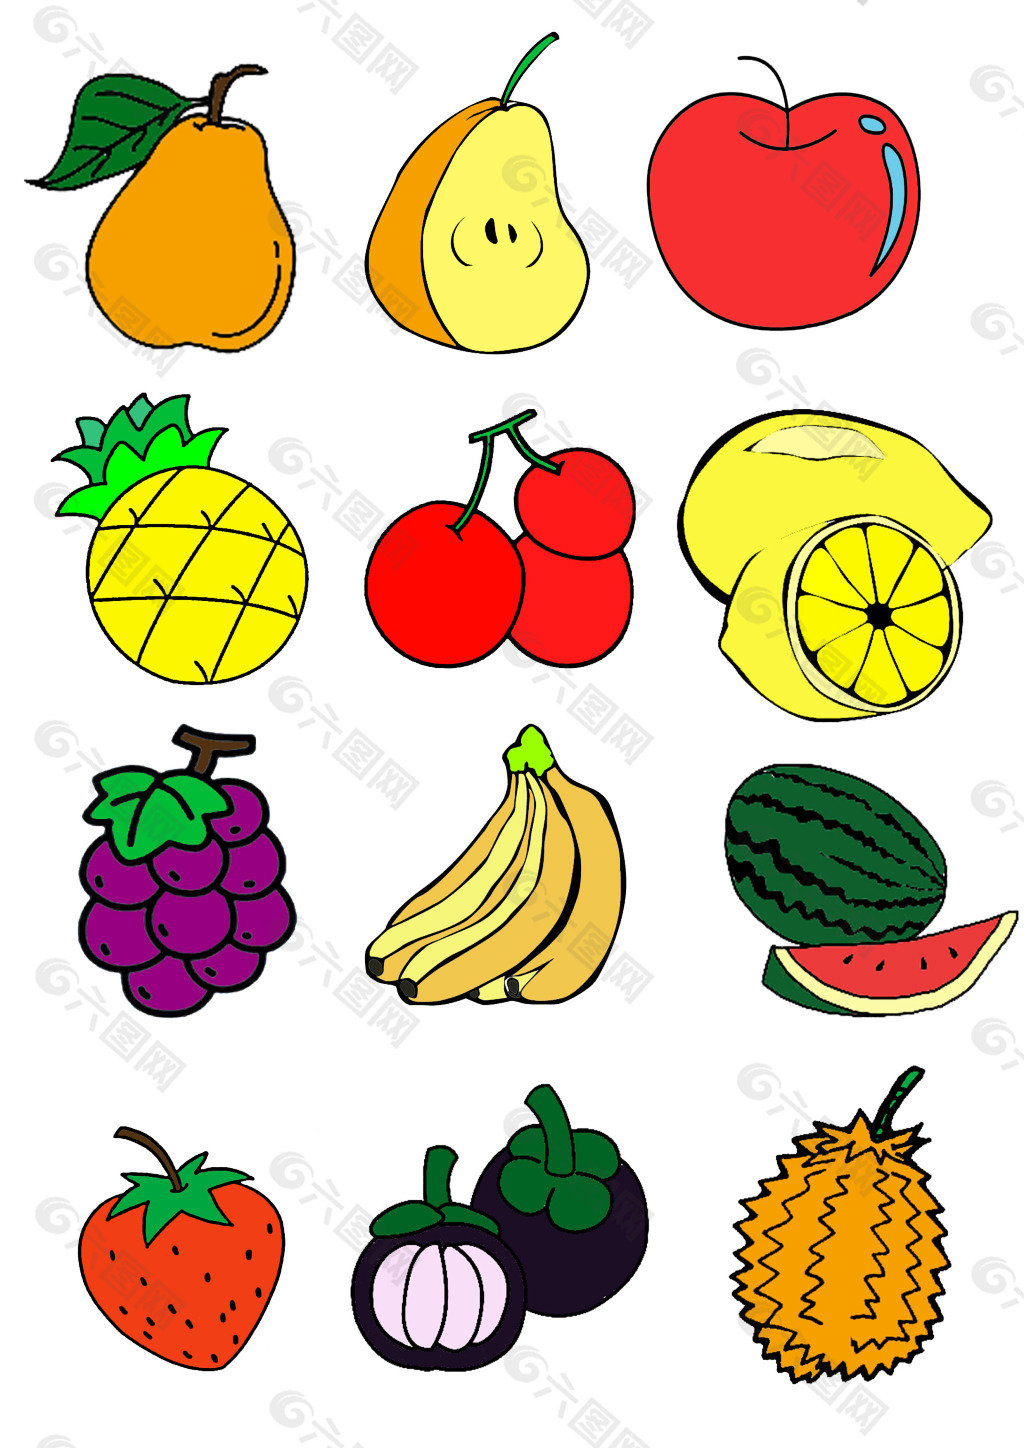 梨子,苹果,菠萝,樱桃,柠檬,葡萄,香蕉,西瓜,草莓,山竹,榴莲感兴趣